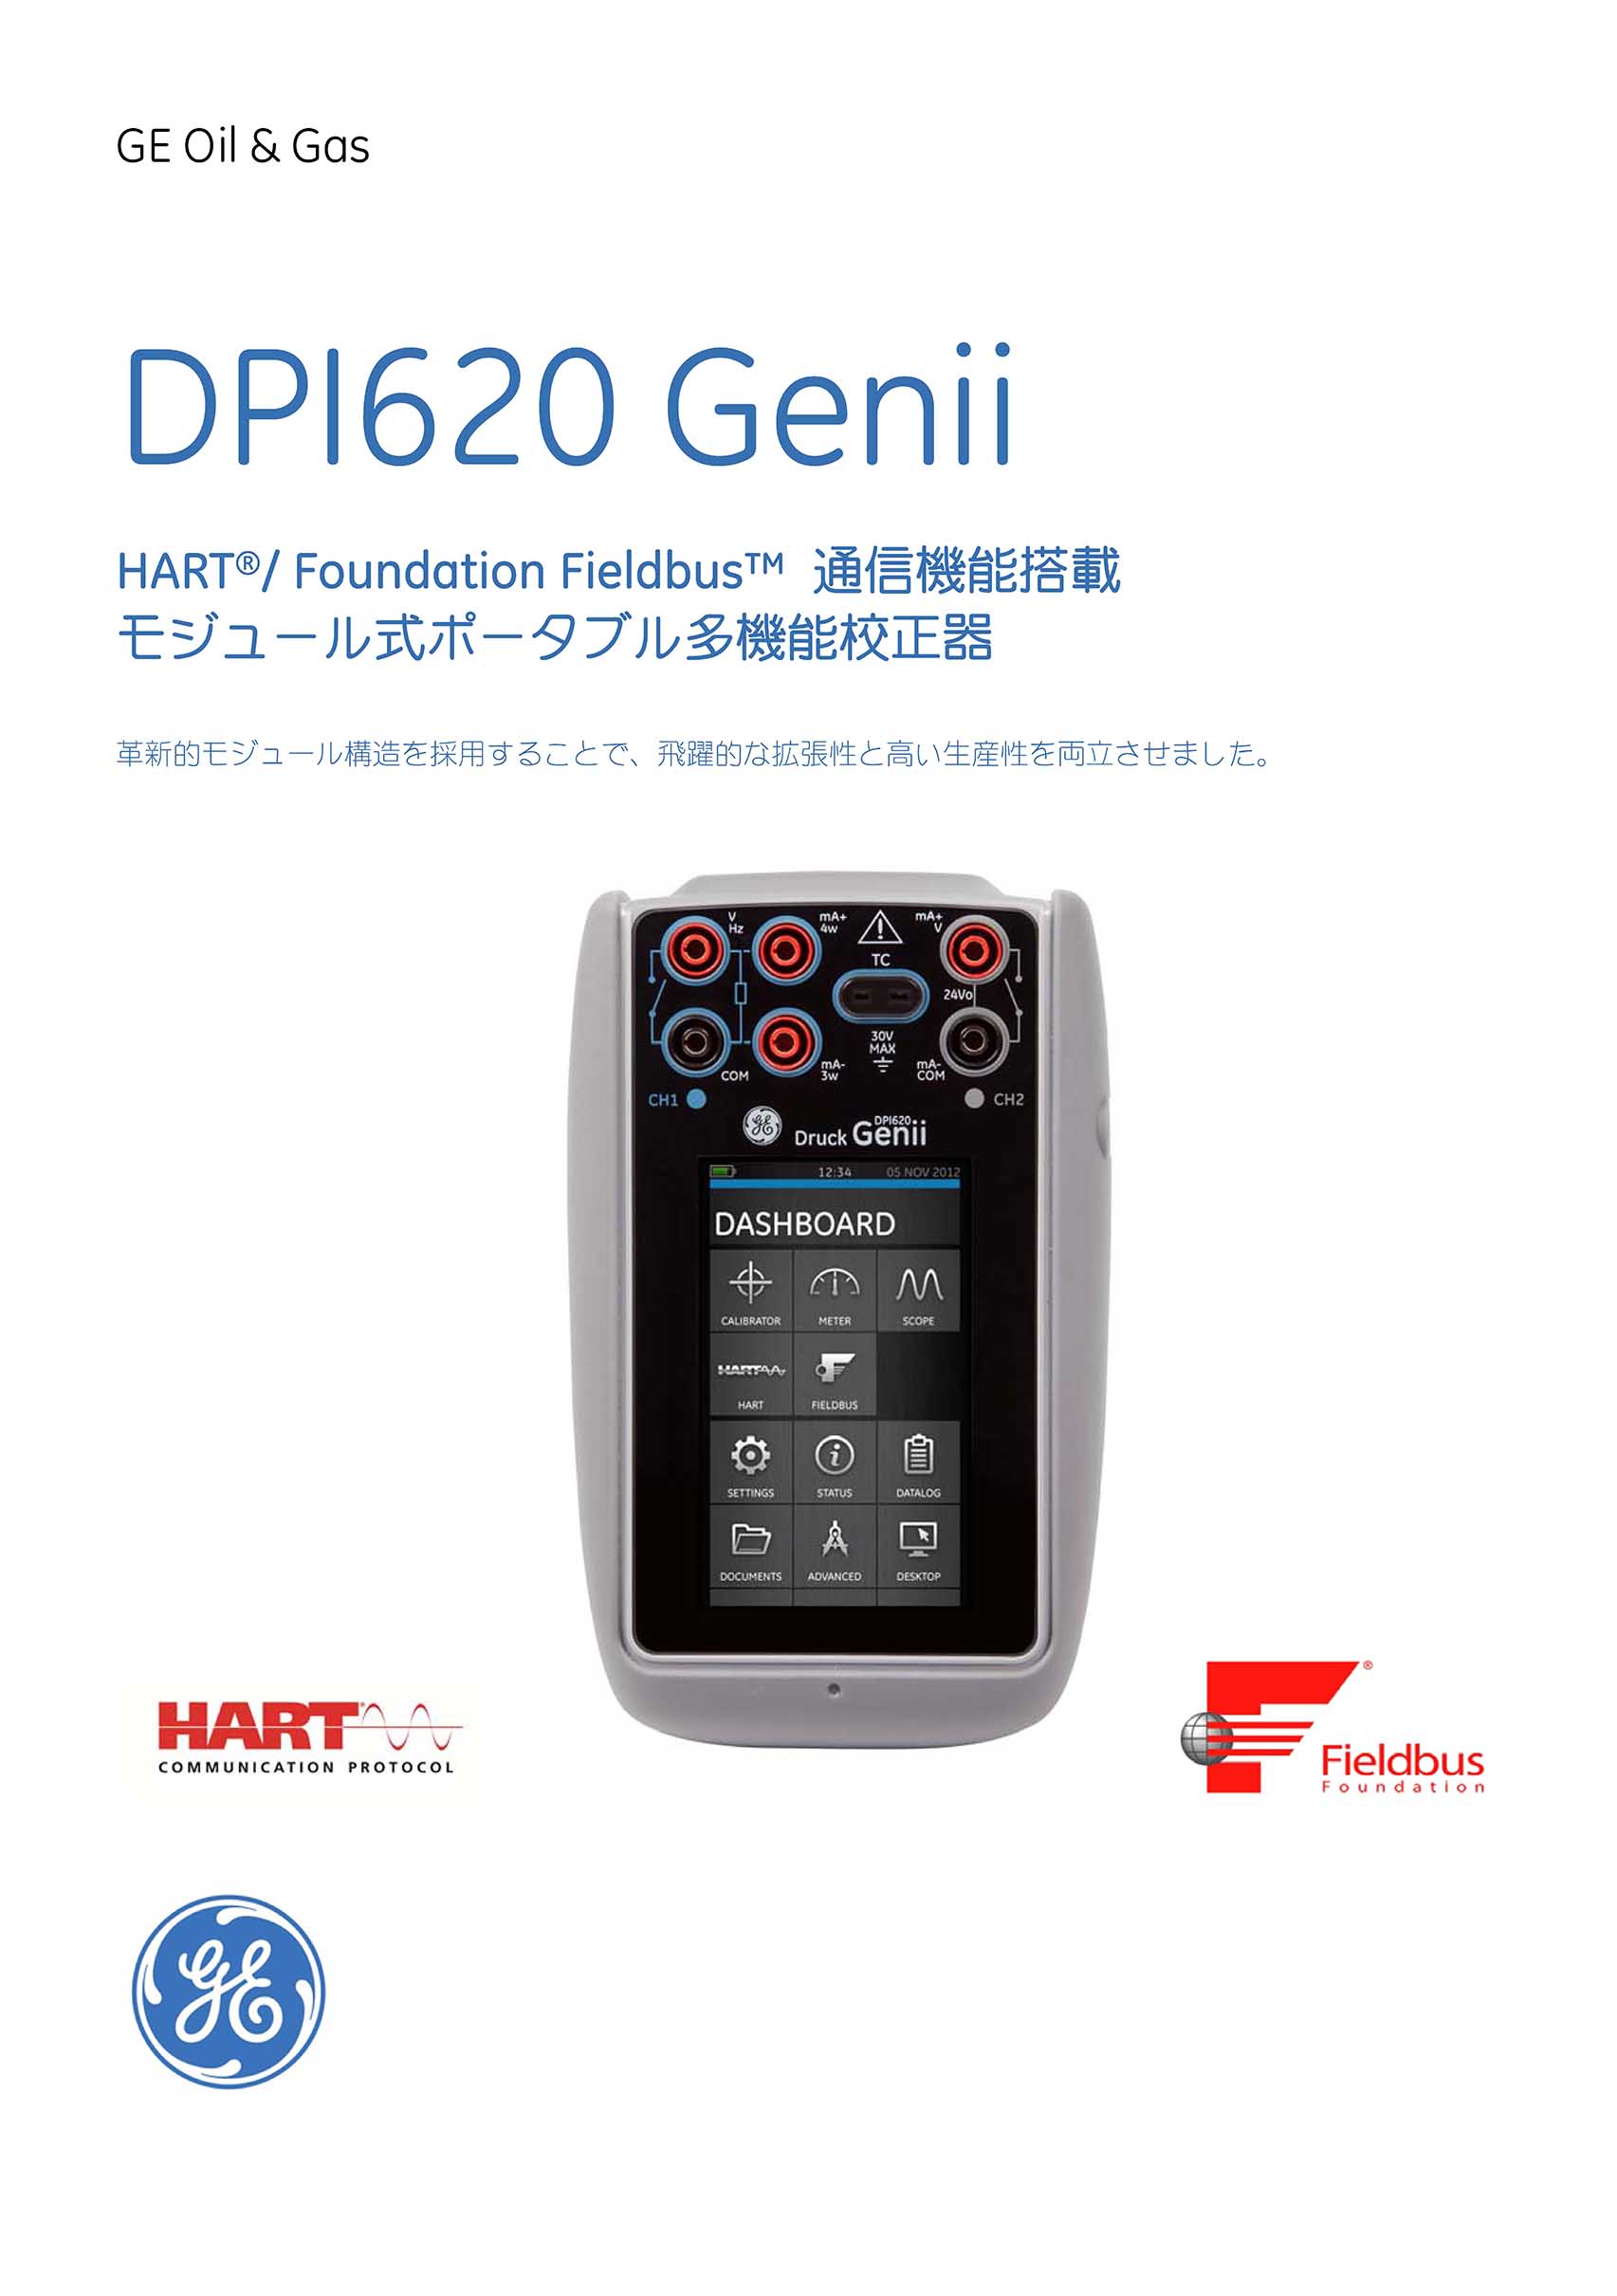 ポータブル圧力校正器 DPI620Genii